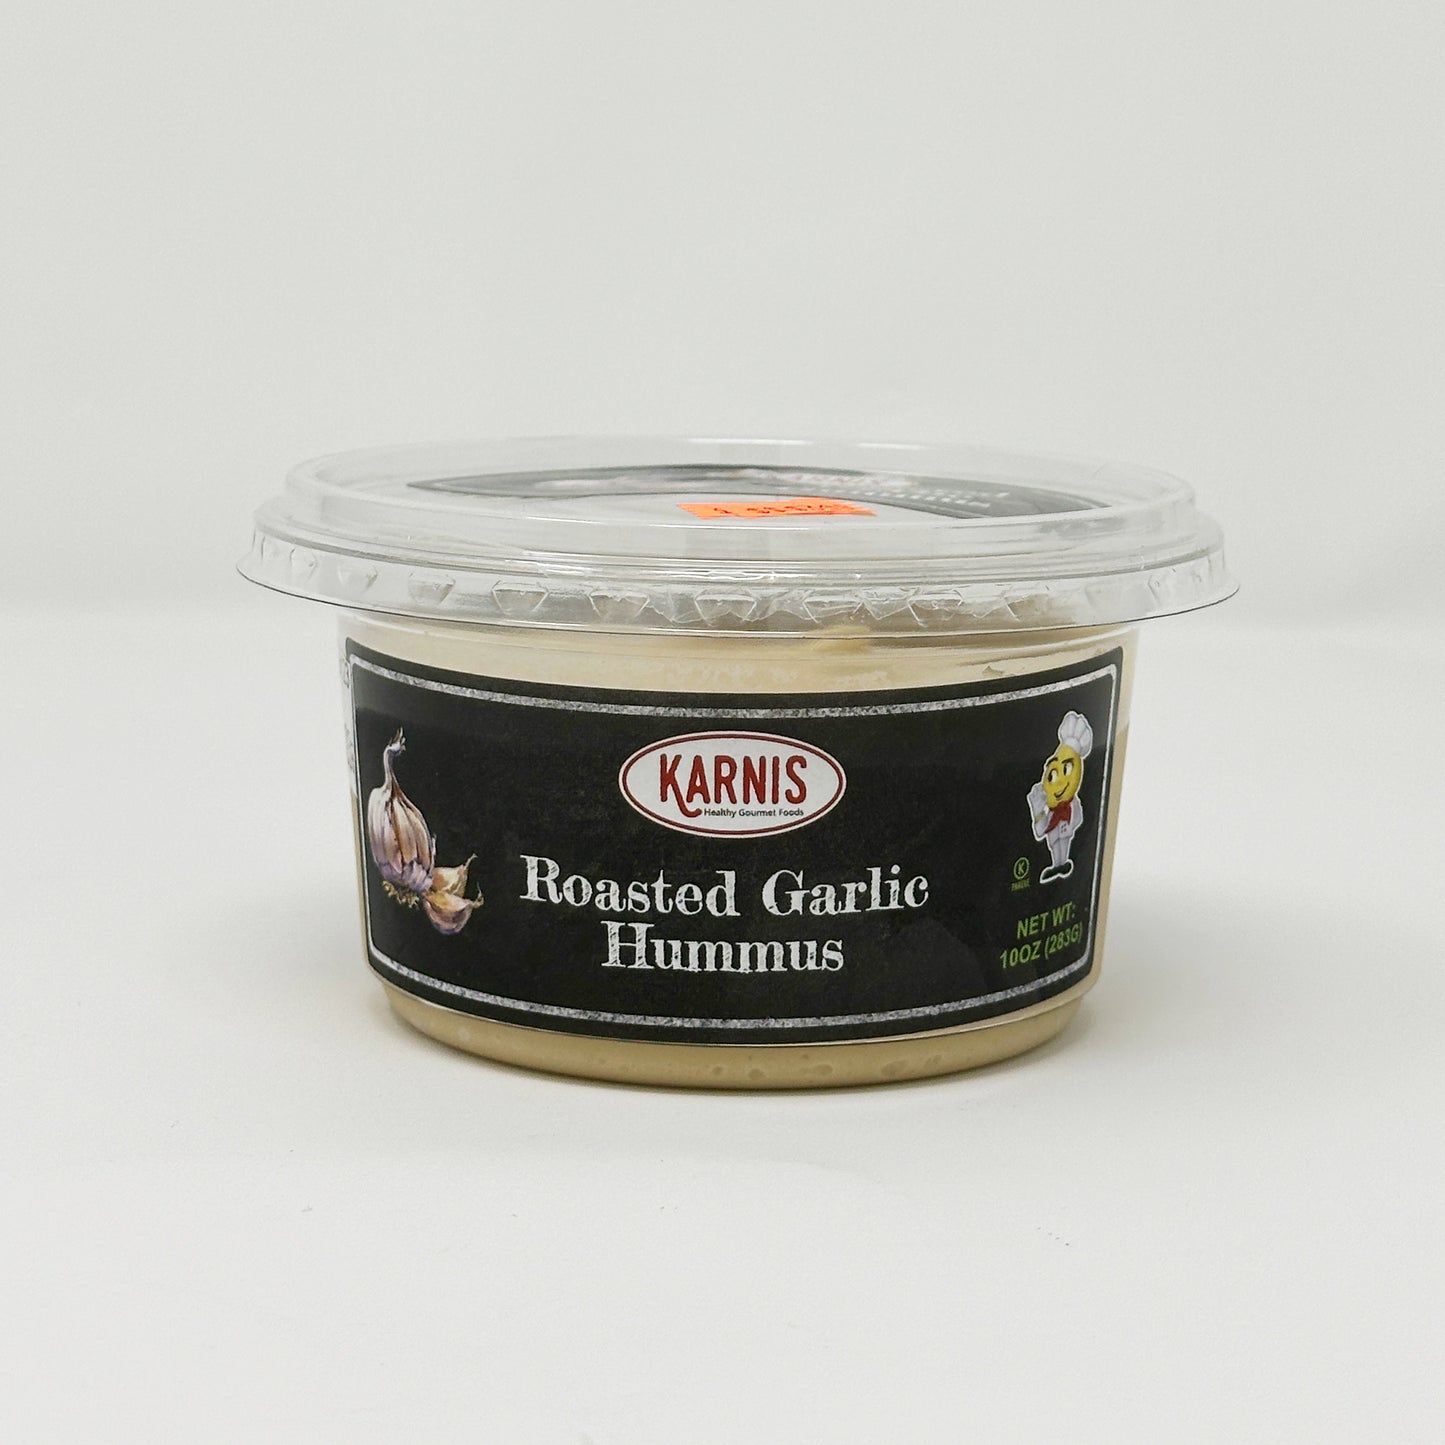 Karnis Roasted Garlic Hummus 10 oz